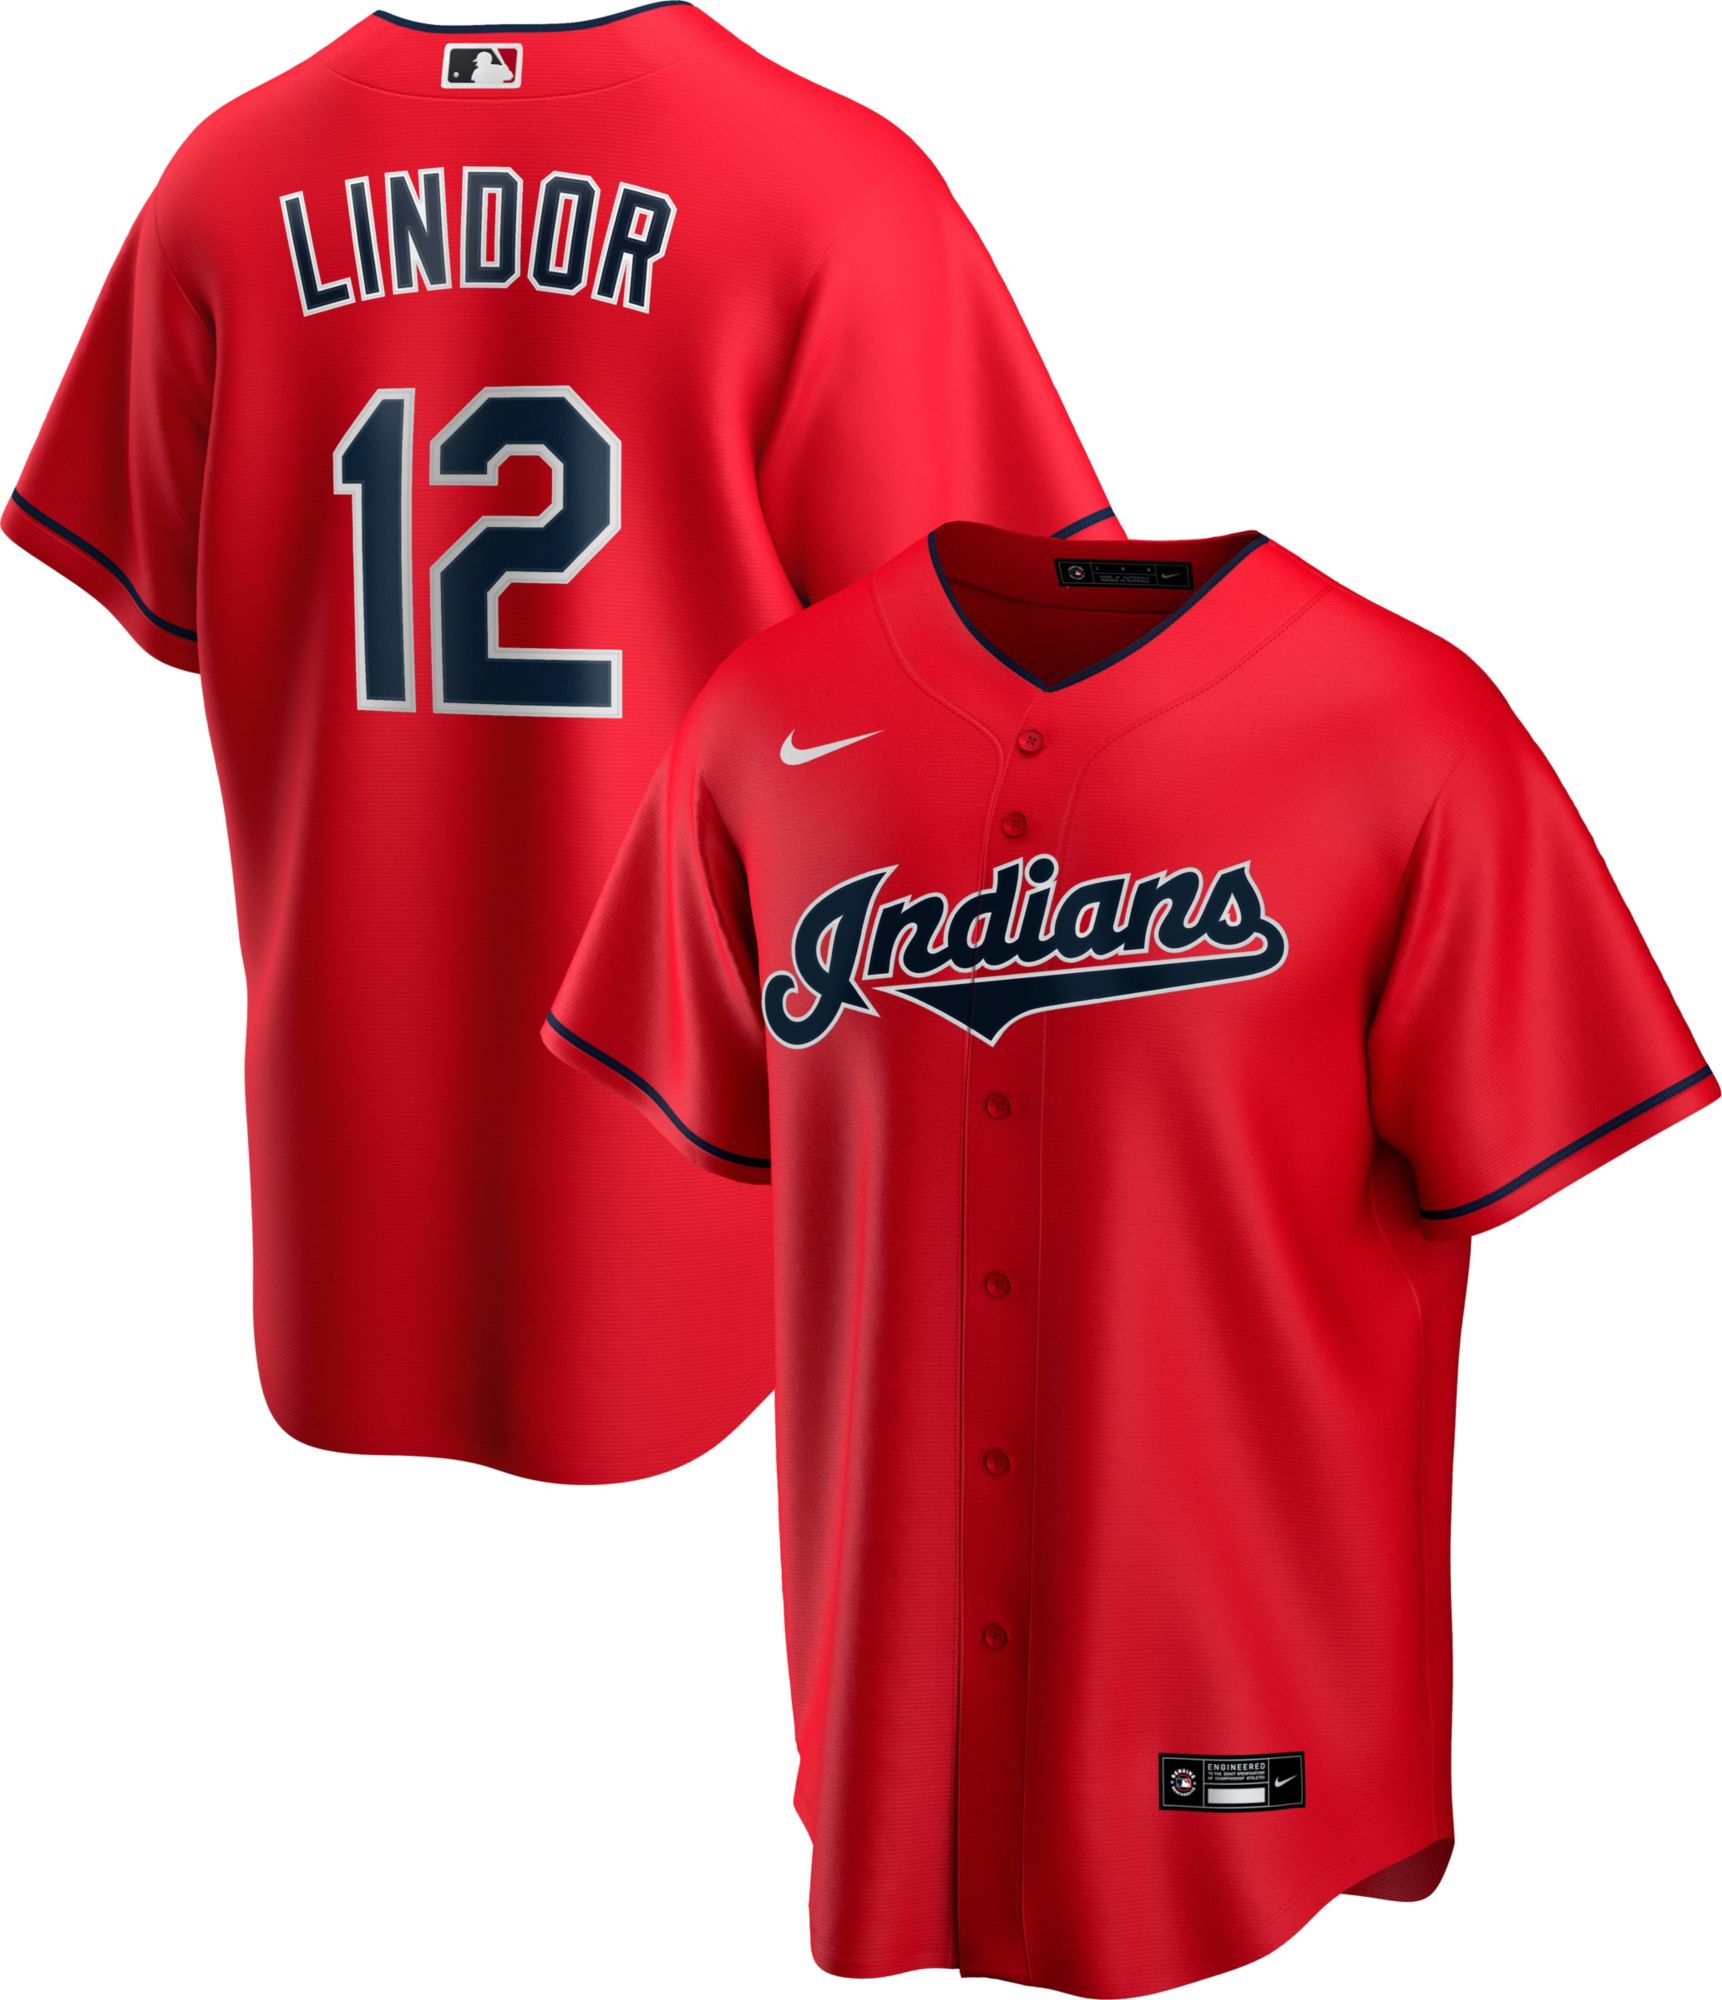 Cleveland Indians Francisco Lindor 